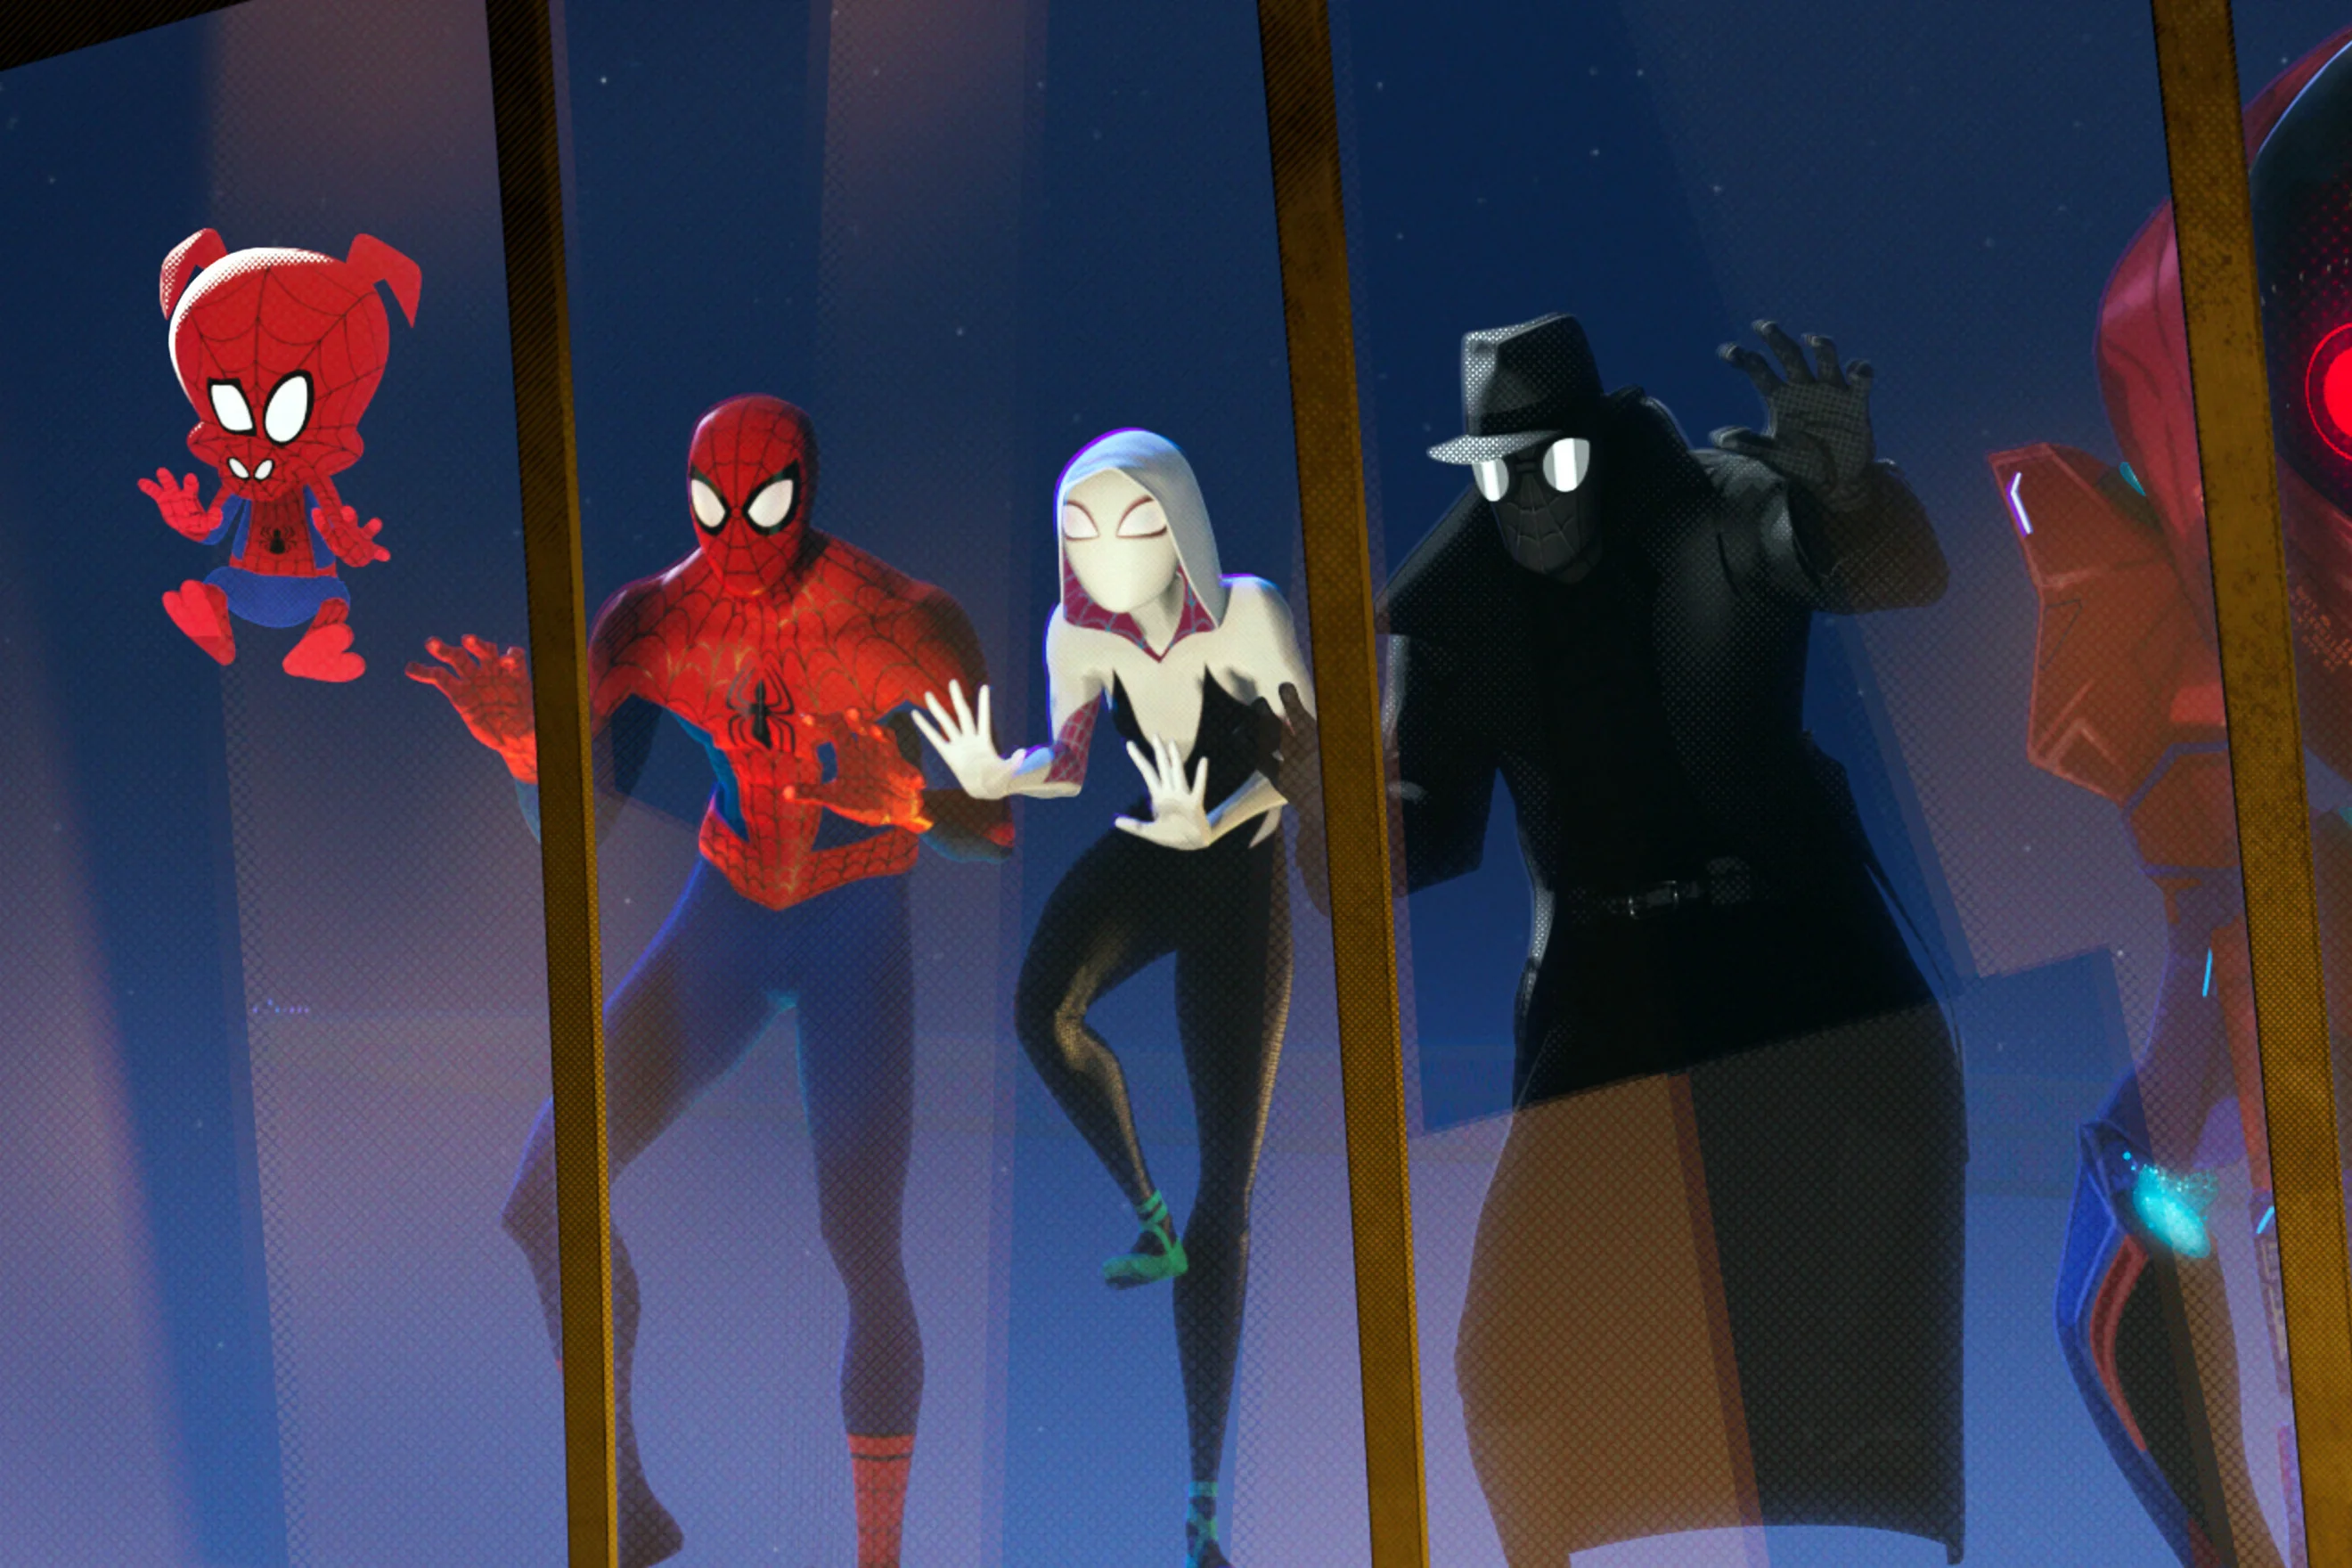 Аниматор раскрыл в «Человеке-пауке: Через вселенные» новую, хорошо скрытую пасхалку со Стэном Ли - фото 1